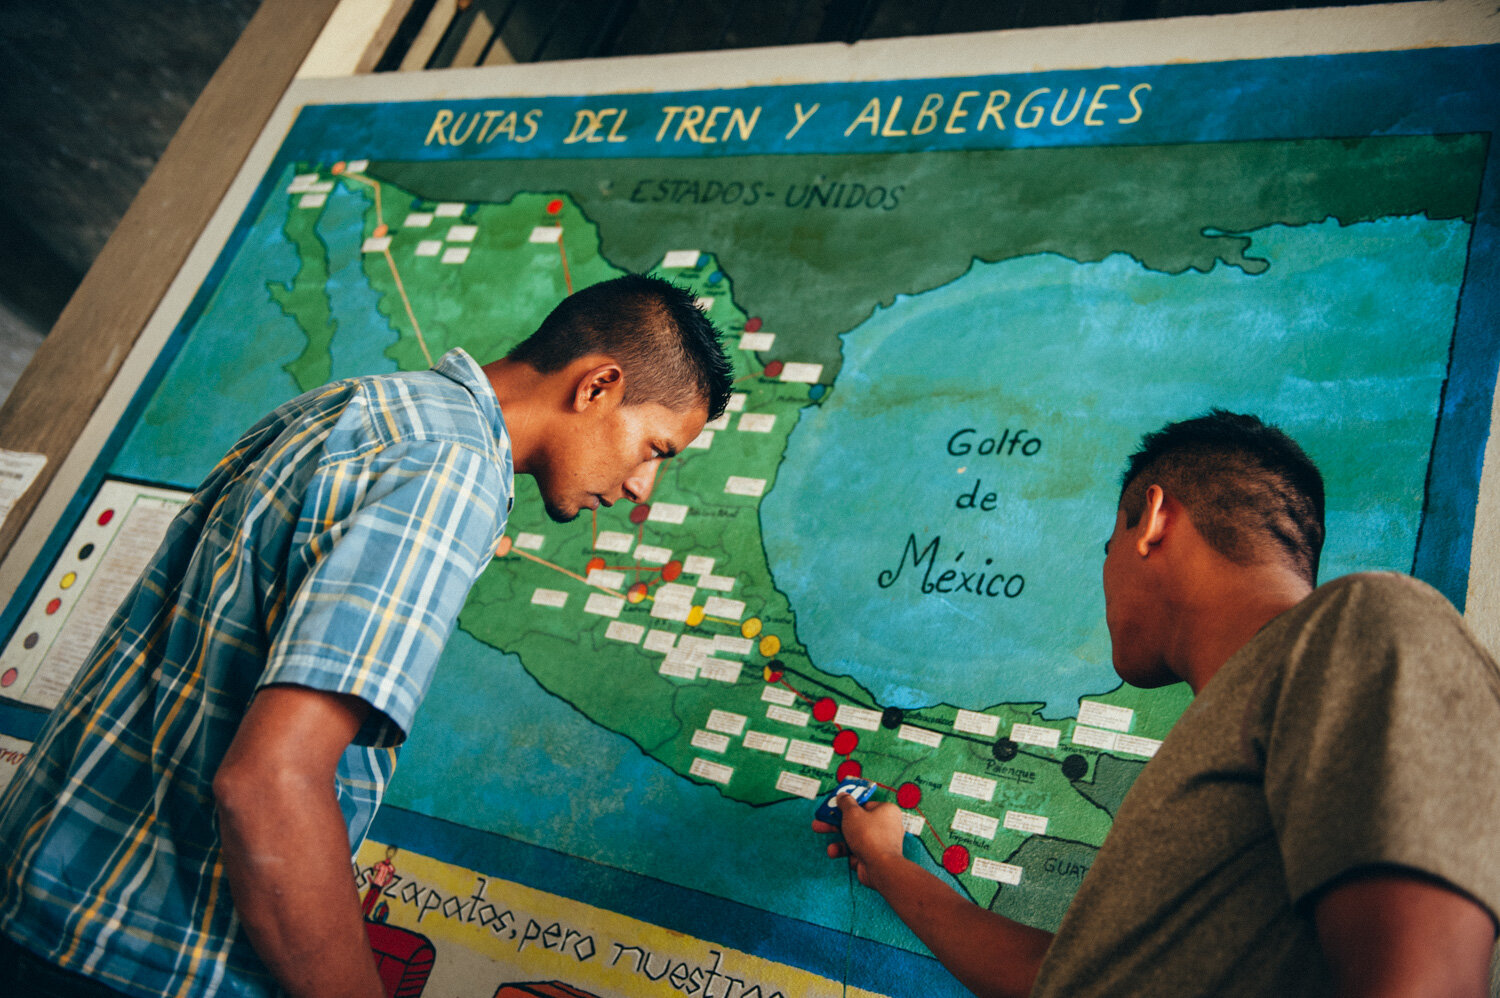  Des migrants préparent leur départ devant la grande carte de la maison de migrants de Palenque qui accueille pour 3 jours maximum. Repas, douche, soins médicaux et information sur les droits, les routes migratoires, et les risques à éviter. Palenque